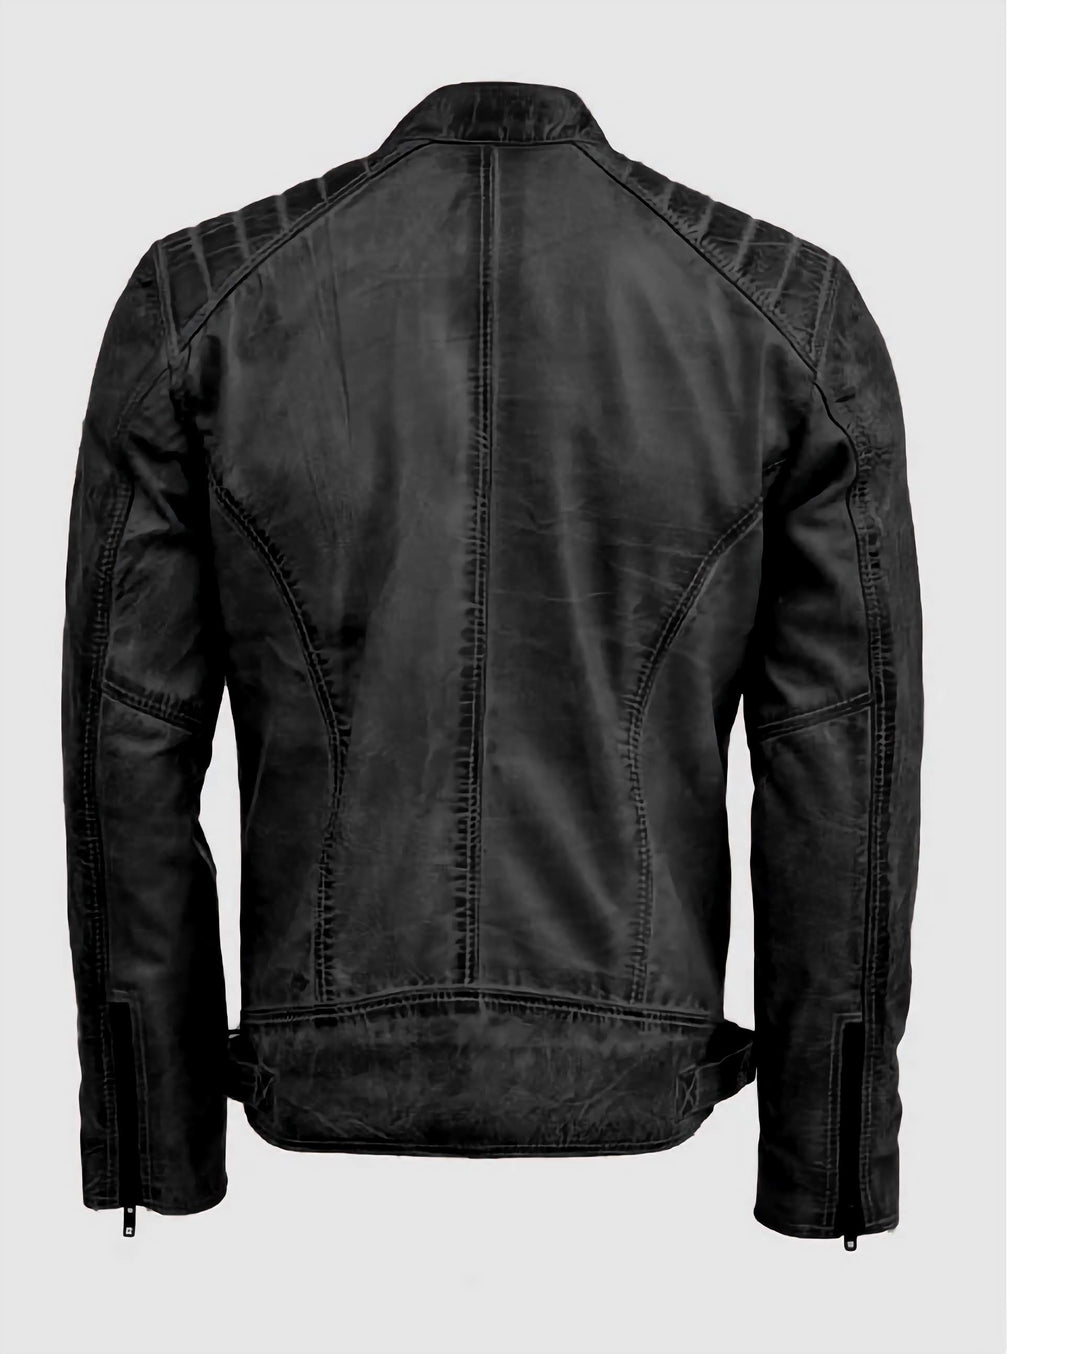 Tom Cruise Racer Leather Jacket